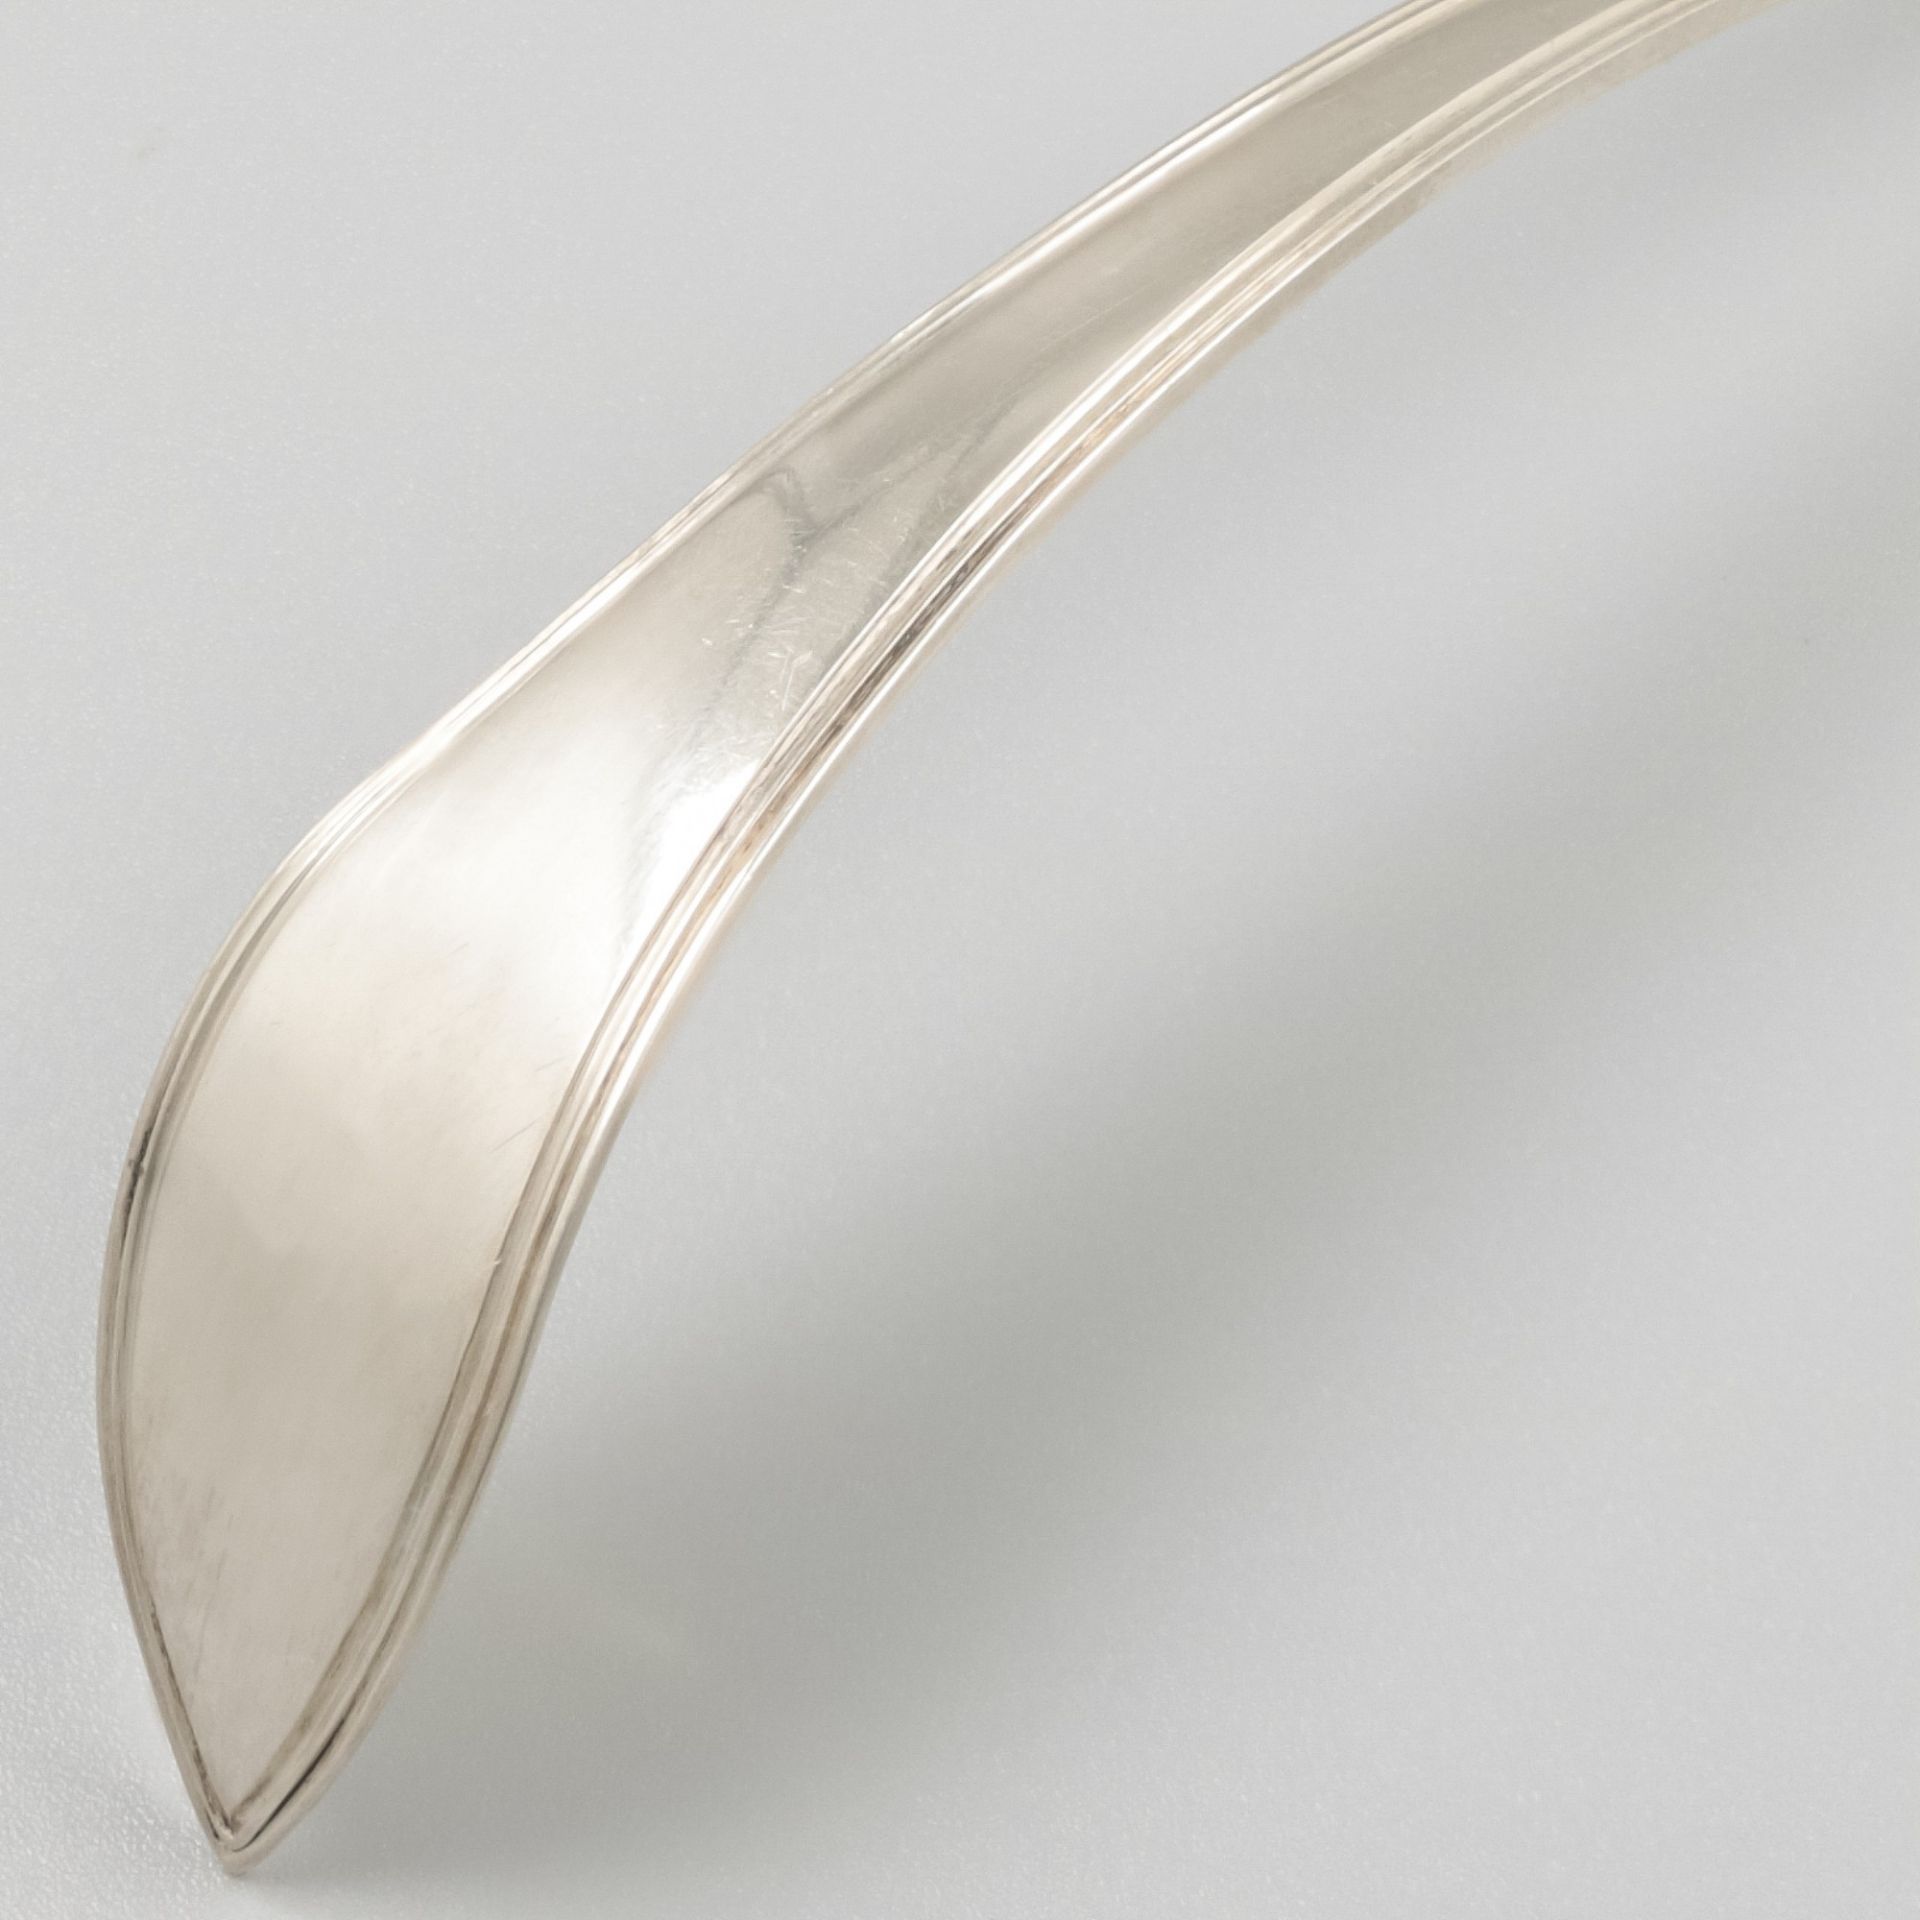 Silver sifter spoon, Barend Verkerk, Amsterdam 1817. - Bild 2 aus 5